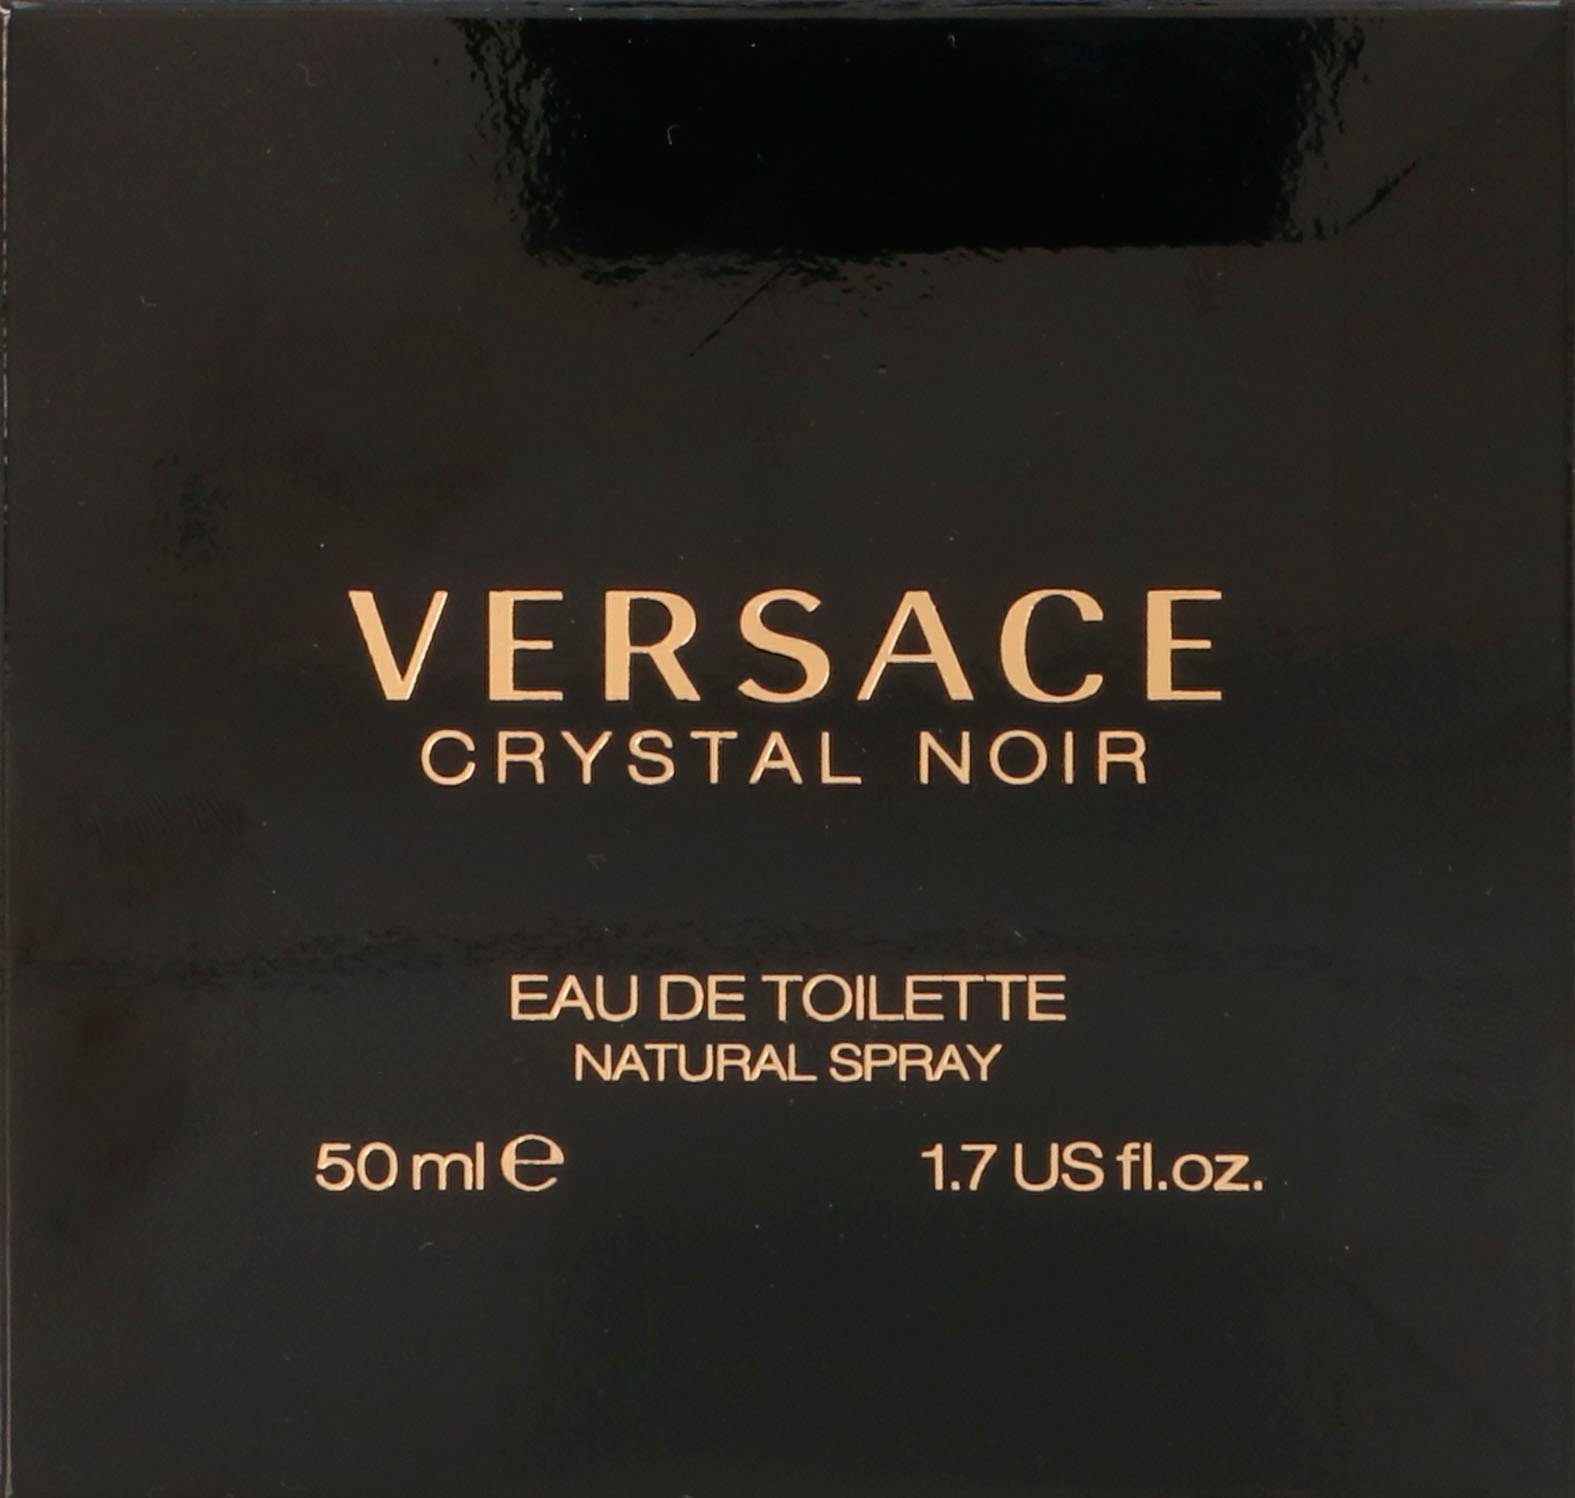 Versace Eau Toilette Bright Crystal de Noir